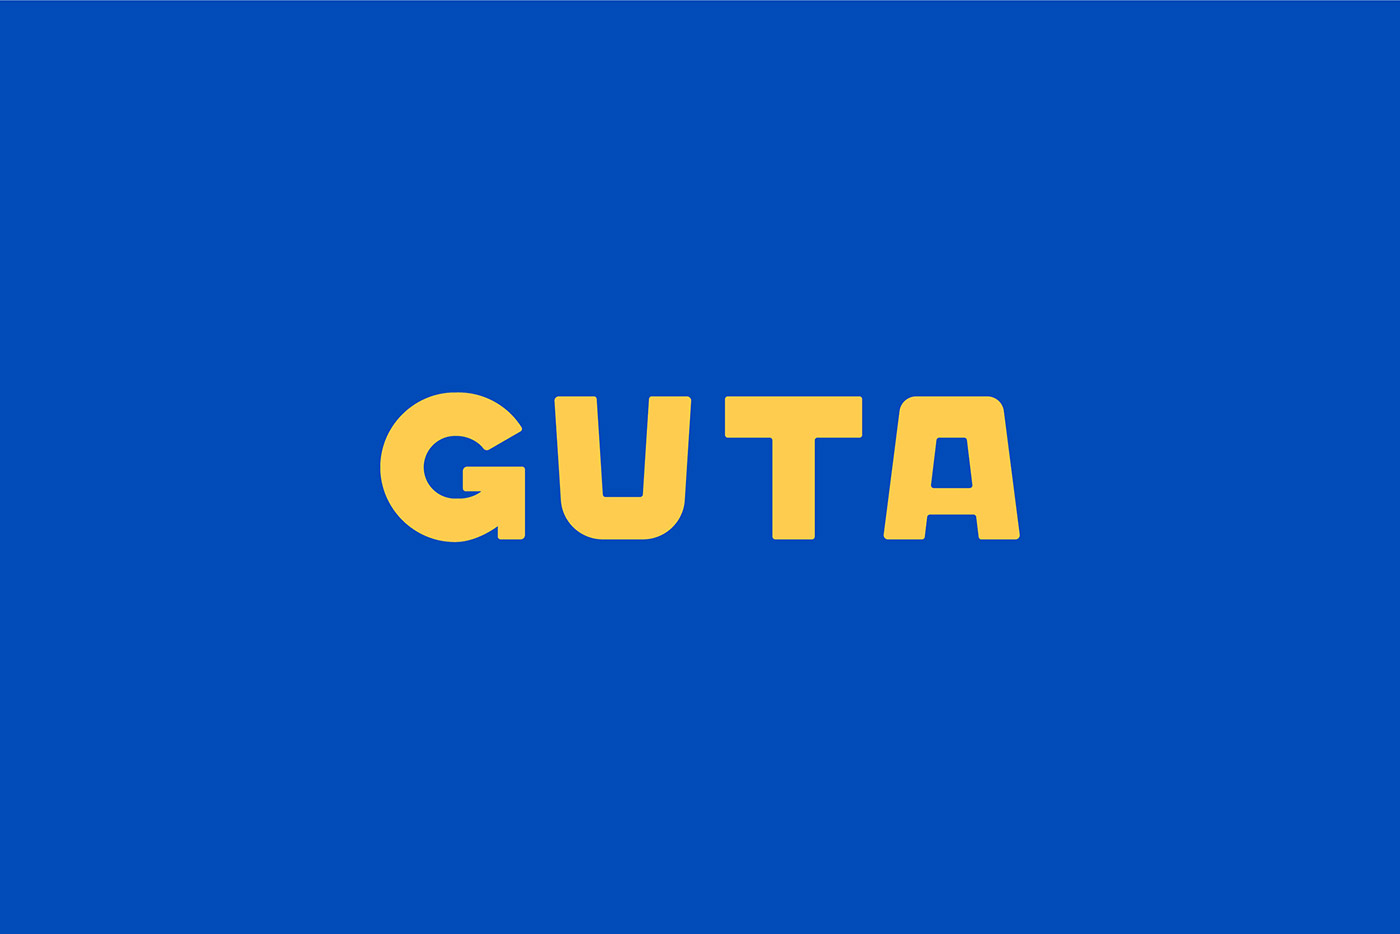 GUTA CAFÉ – hãng cafe với những thiết kế độc đáo mang tính biểu tượng 1674226061 139 GUTA CAFE – hang cafe voi nhung thiet ke doc